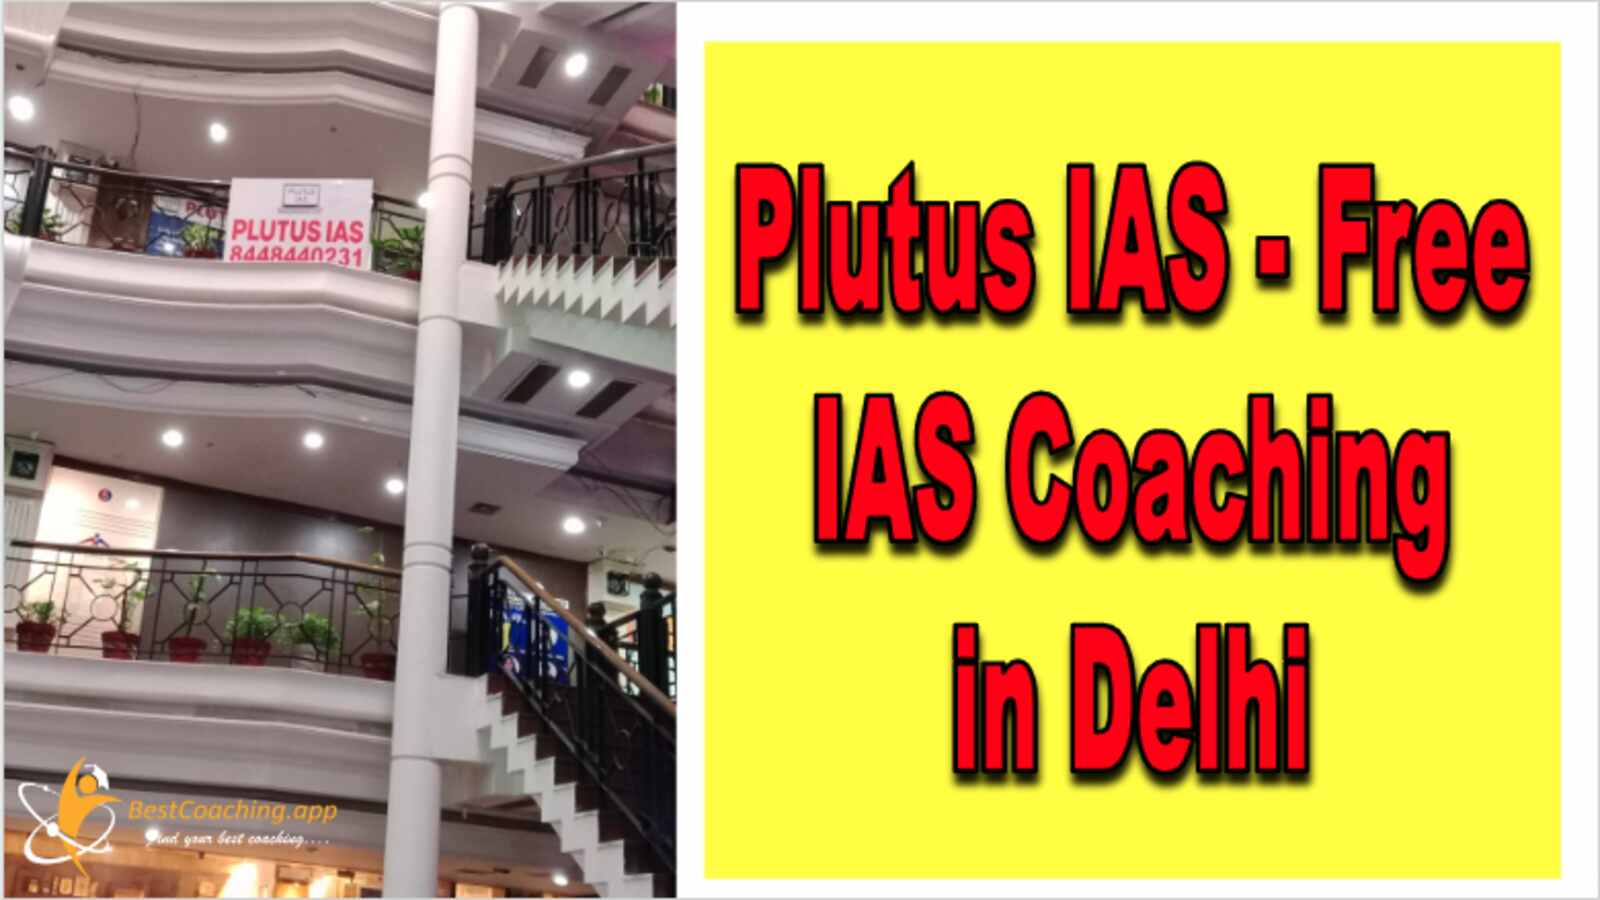 Plutus IAS free IAS Coaching in Delhi